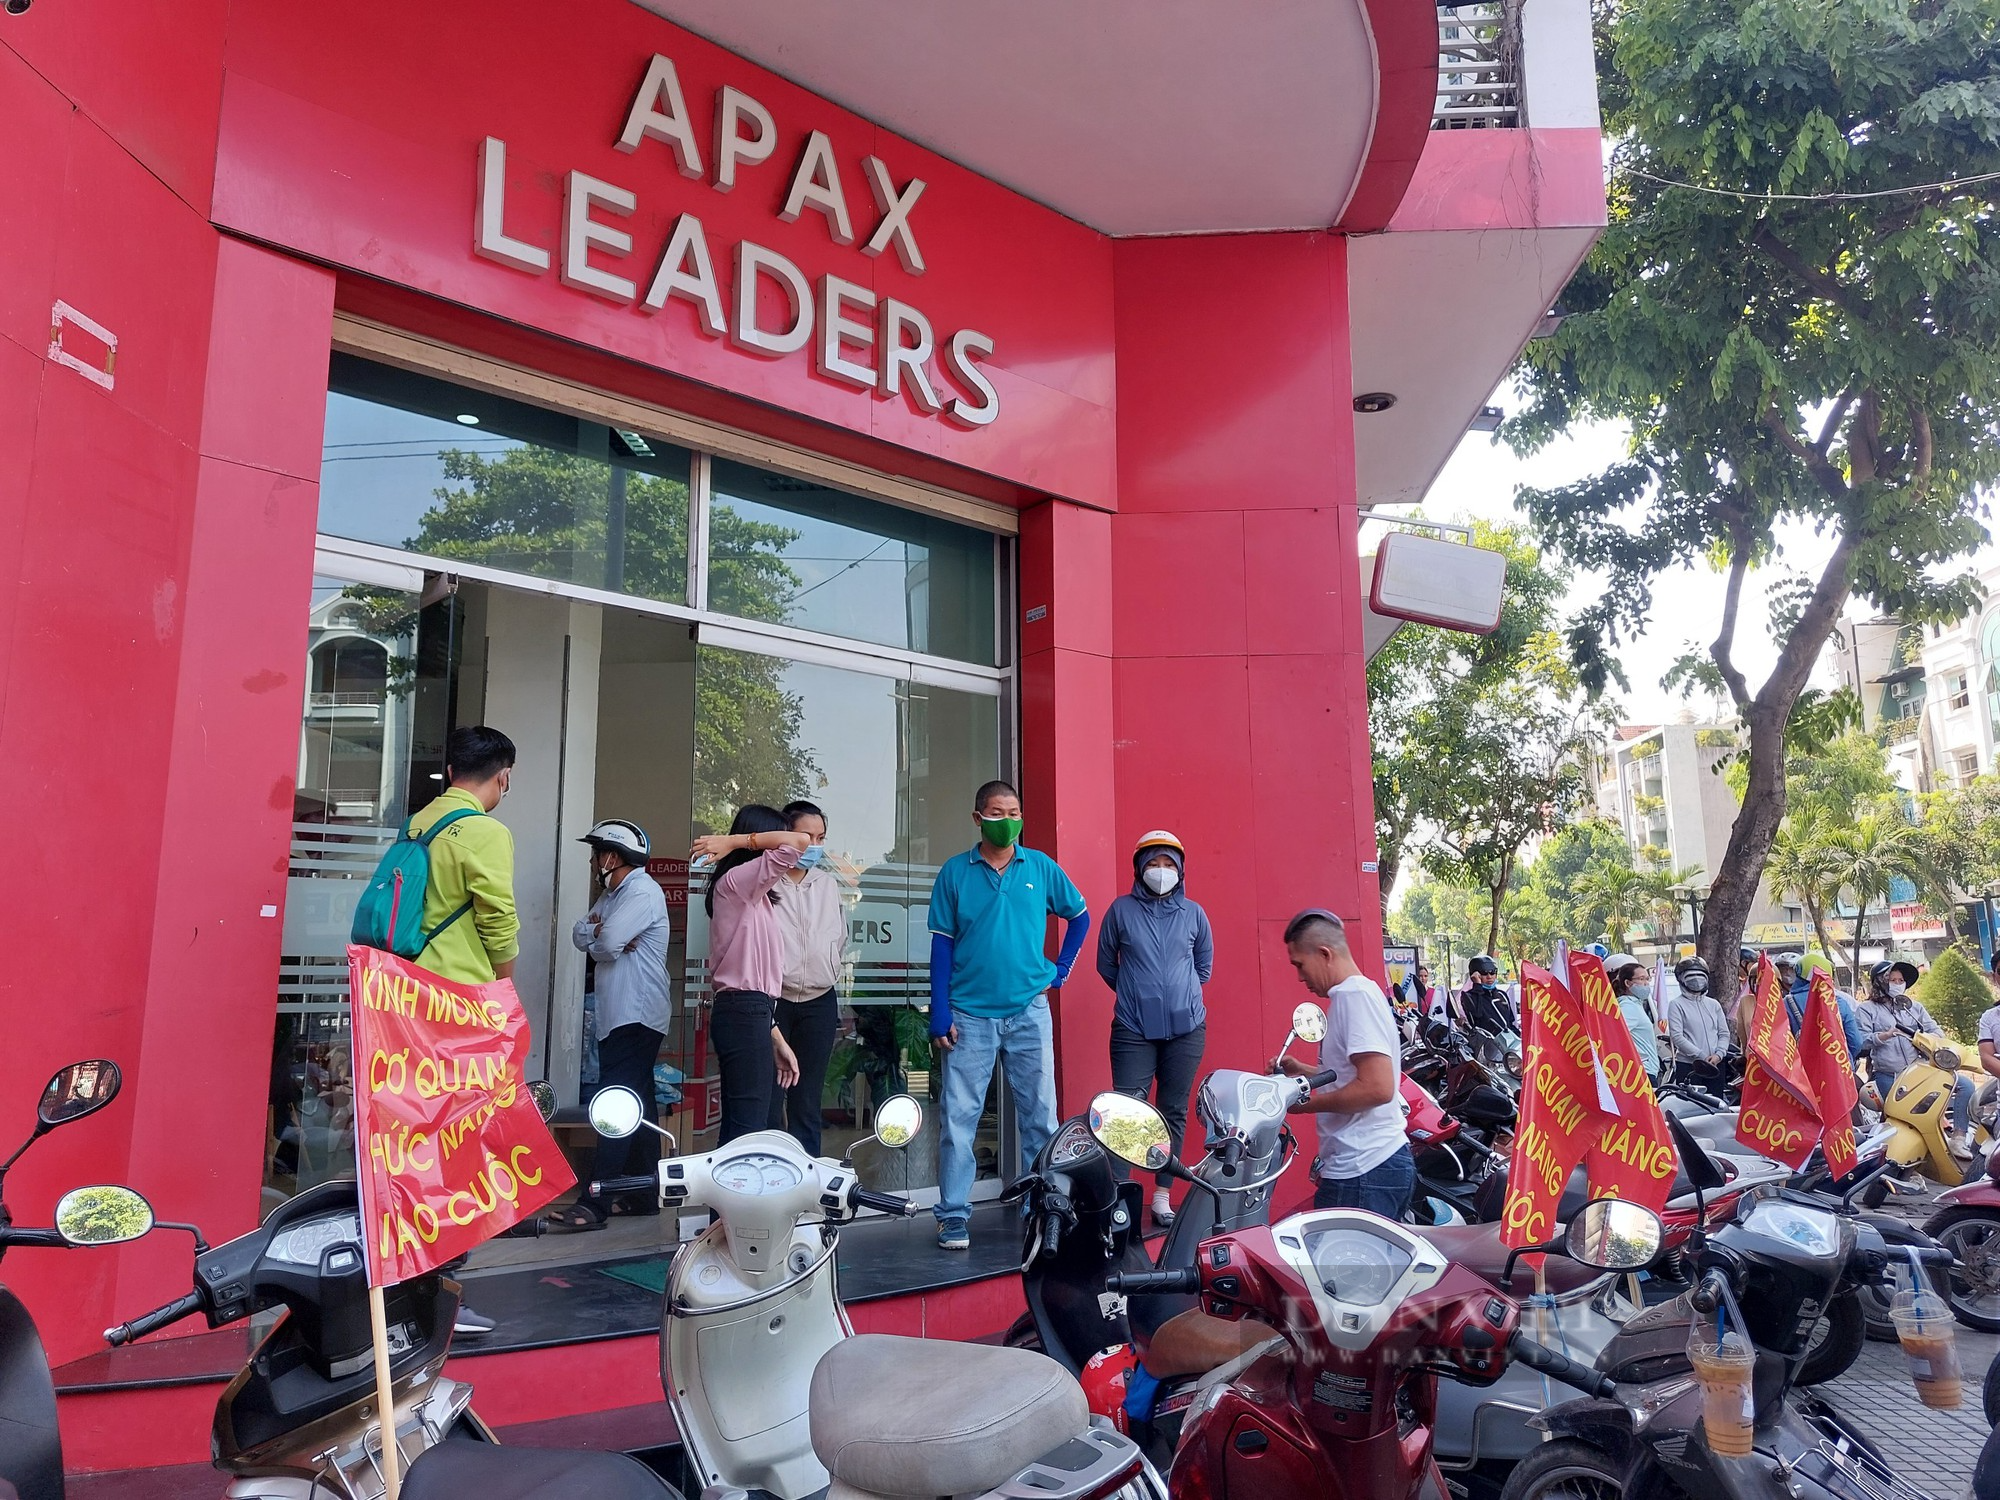 Vụ Apax Leaders: Phụ huynh diễu hành khắp phố để đòi học phí - Ảnh 2.